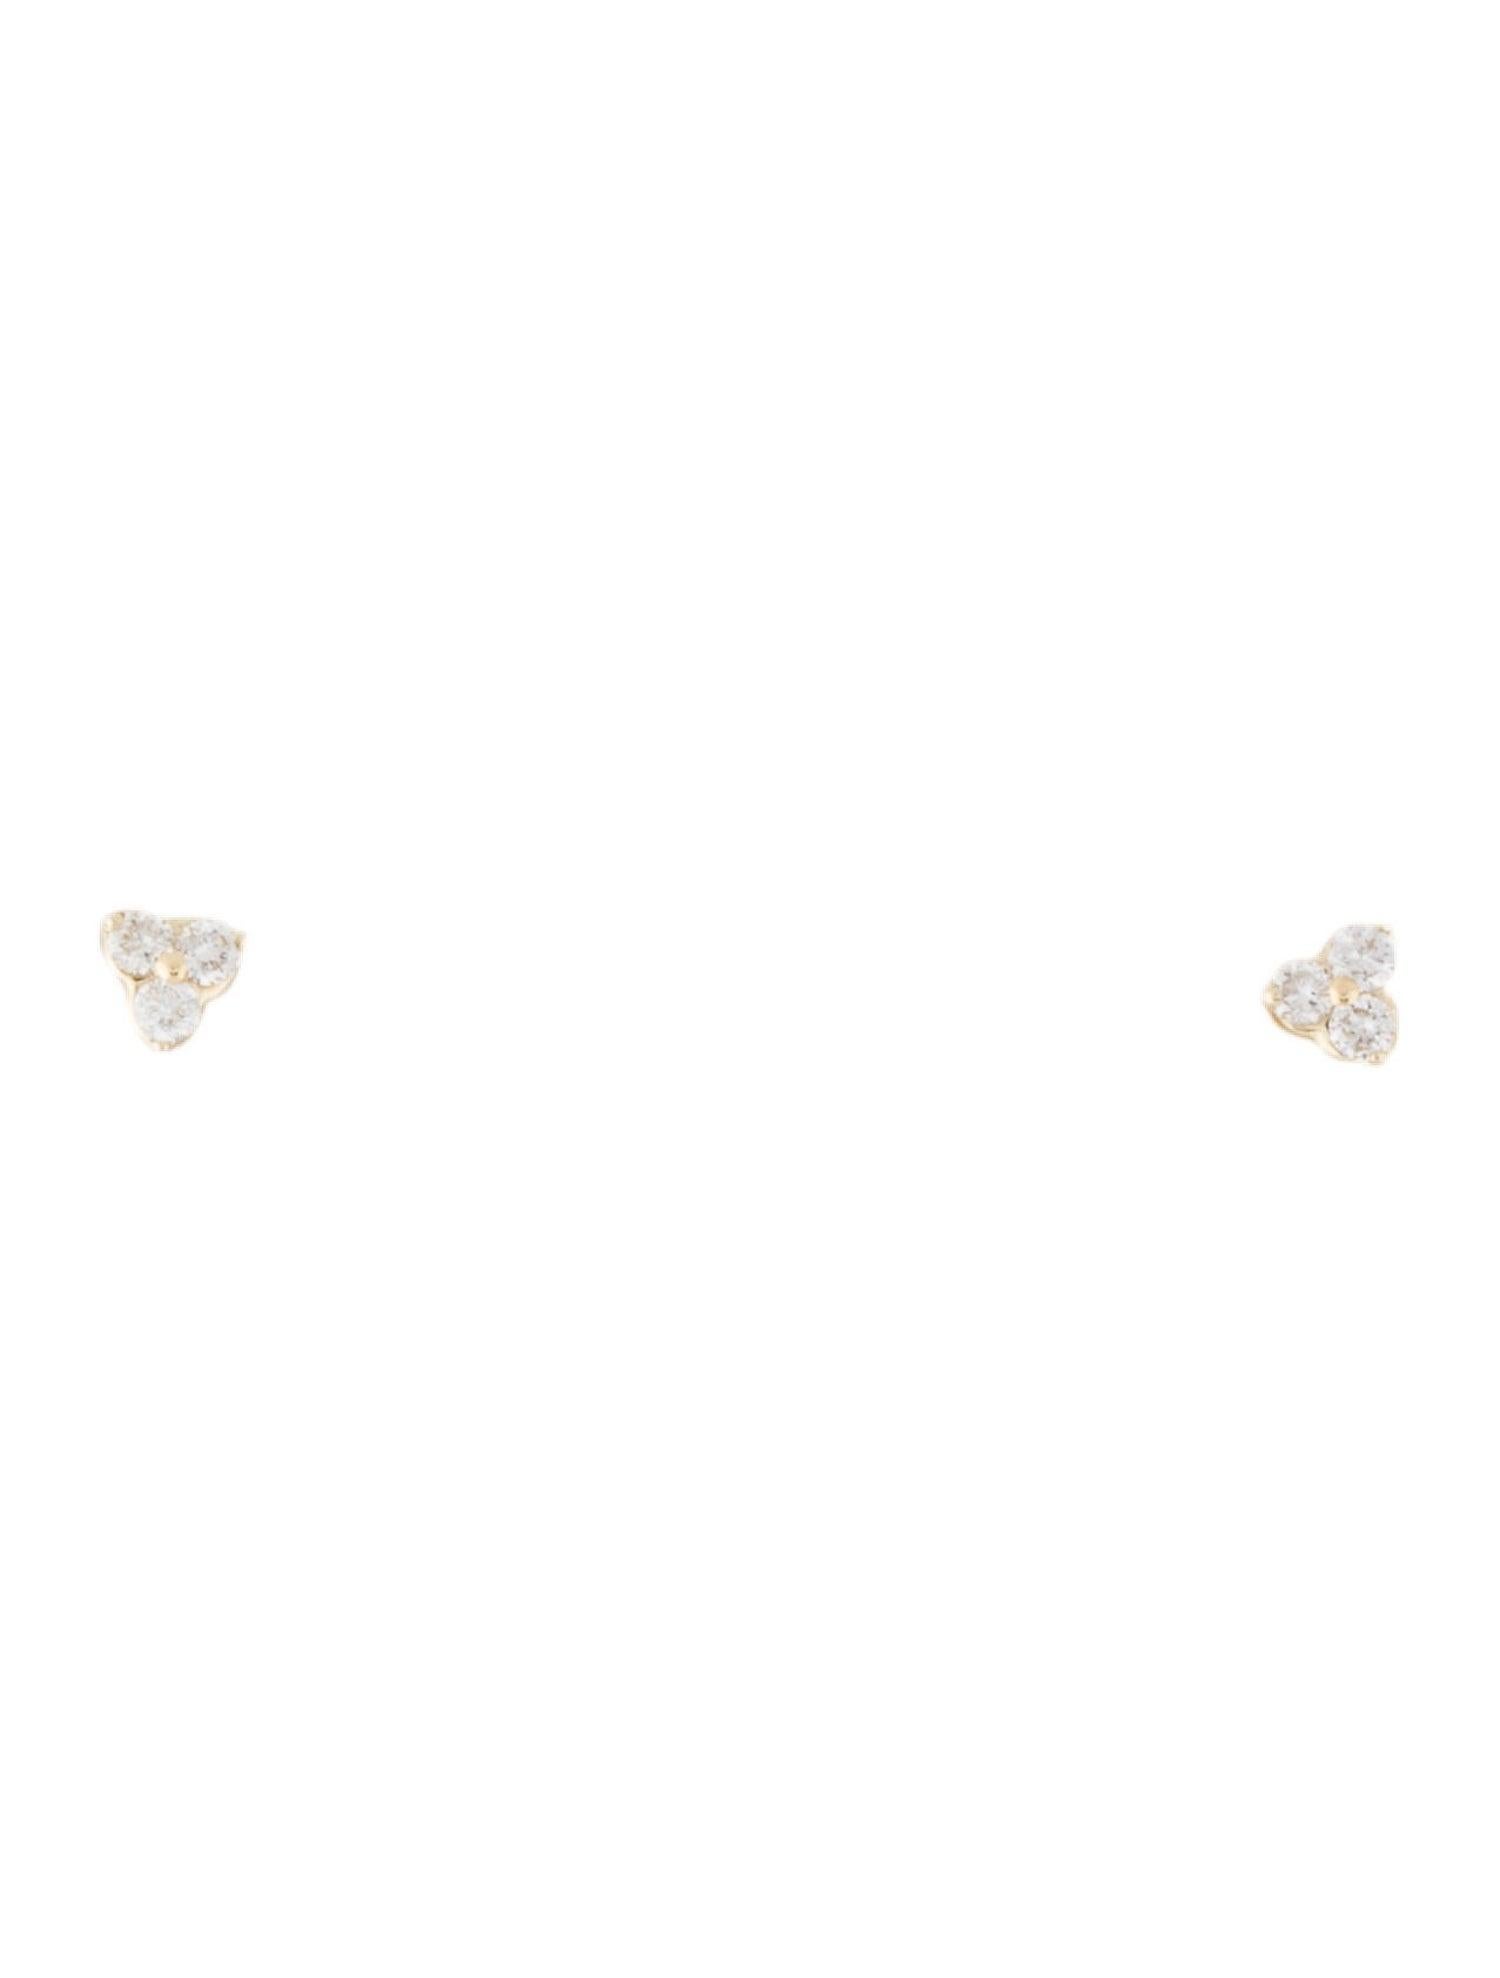 Schöne & klassische kleine 3-Stein-Ohrstecker! Gefertigt aus 14k Gold mit ca. 0,06 ct. funkelnden Diamanten. Farbe und Reinheit des Diamanten GH-SI1-SI2. Gesichert durch einen Schmetterlingsverschluss mit Druckknopf. Dieses Stück ist perfekt für den